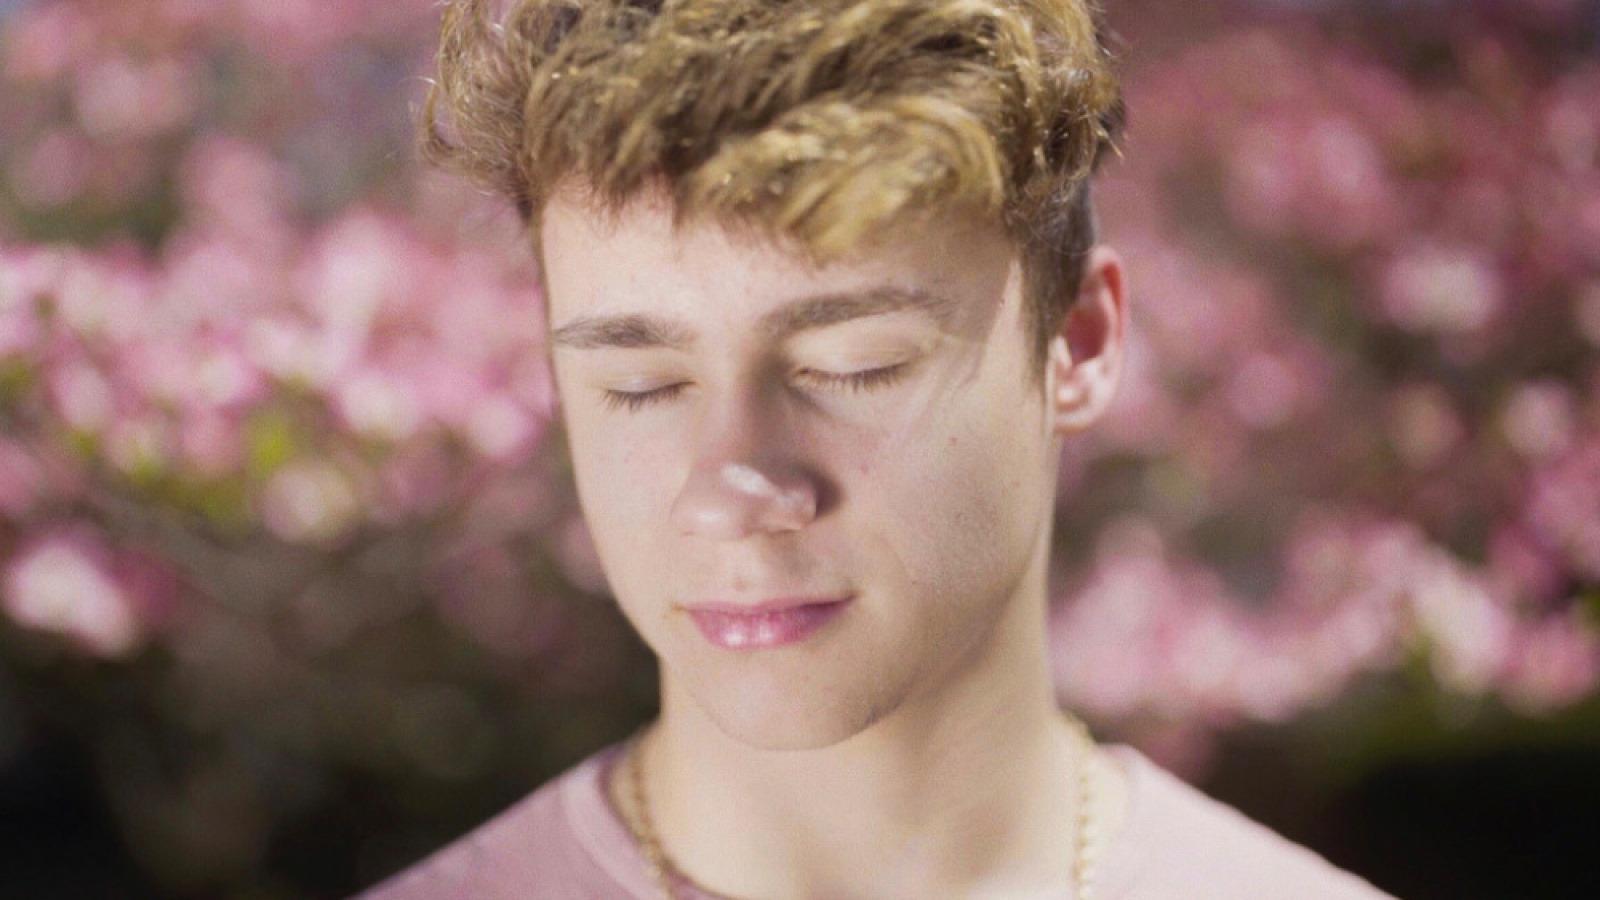 rus: Крупний план гарного кучерявого молодика із заплющеними очима на фоні рожевих квіток